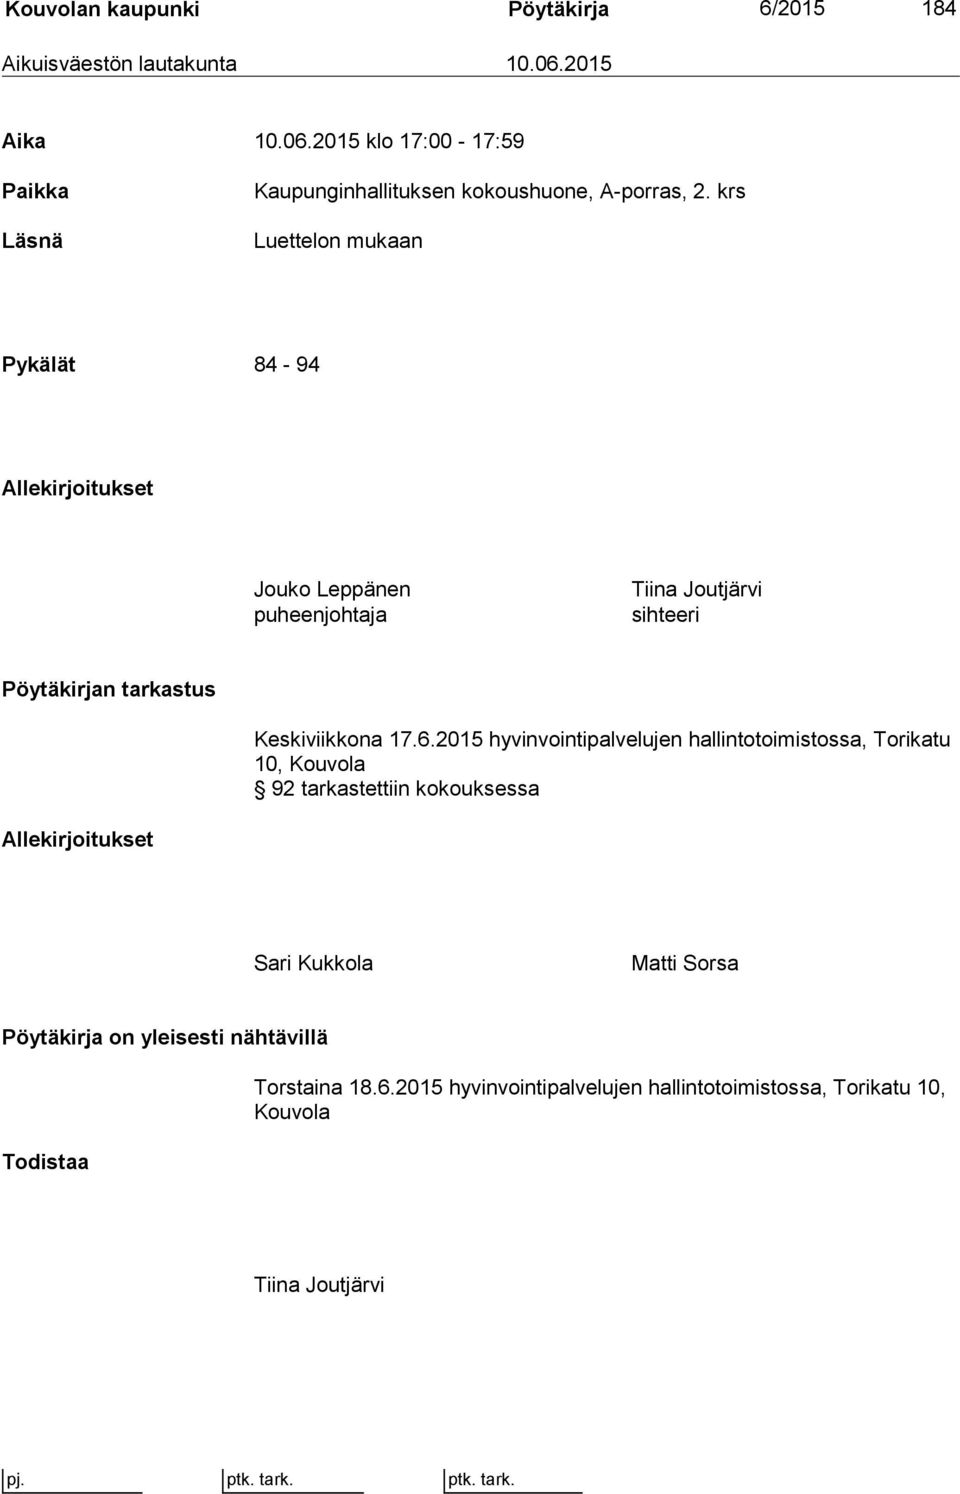 krs Luettelon mukaan Pykälät 84-94 Allekirjoitukset Jouko Leppänen puheenjohtaja Tiina Joutjärvi sihteeri Pöytäkirjan tarkastus Keskiviikkona 17.6.